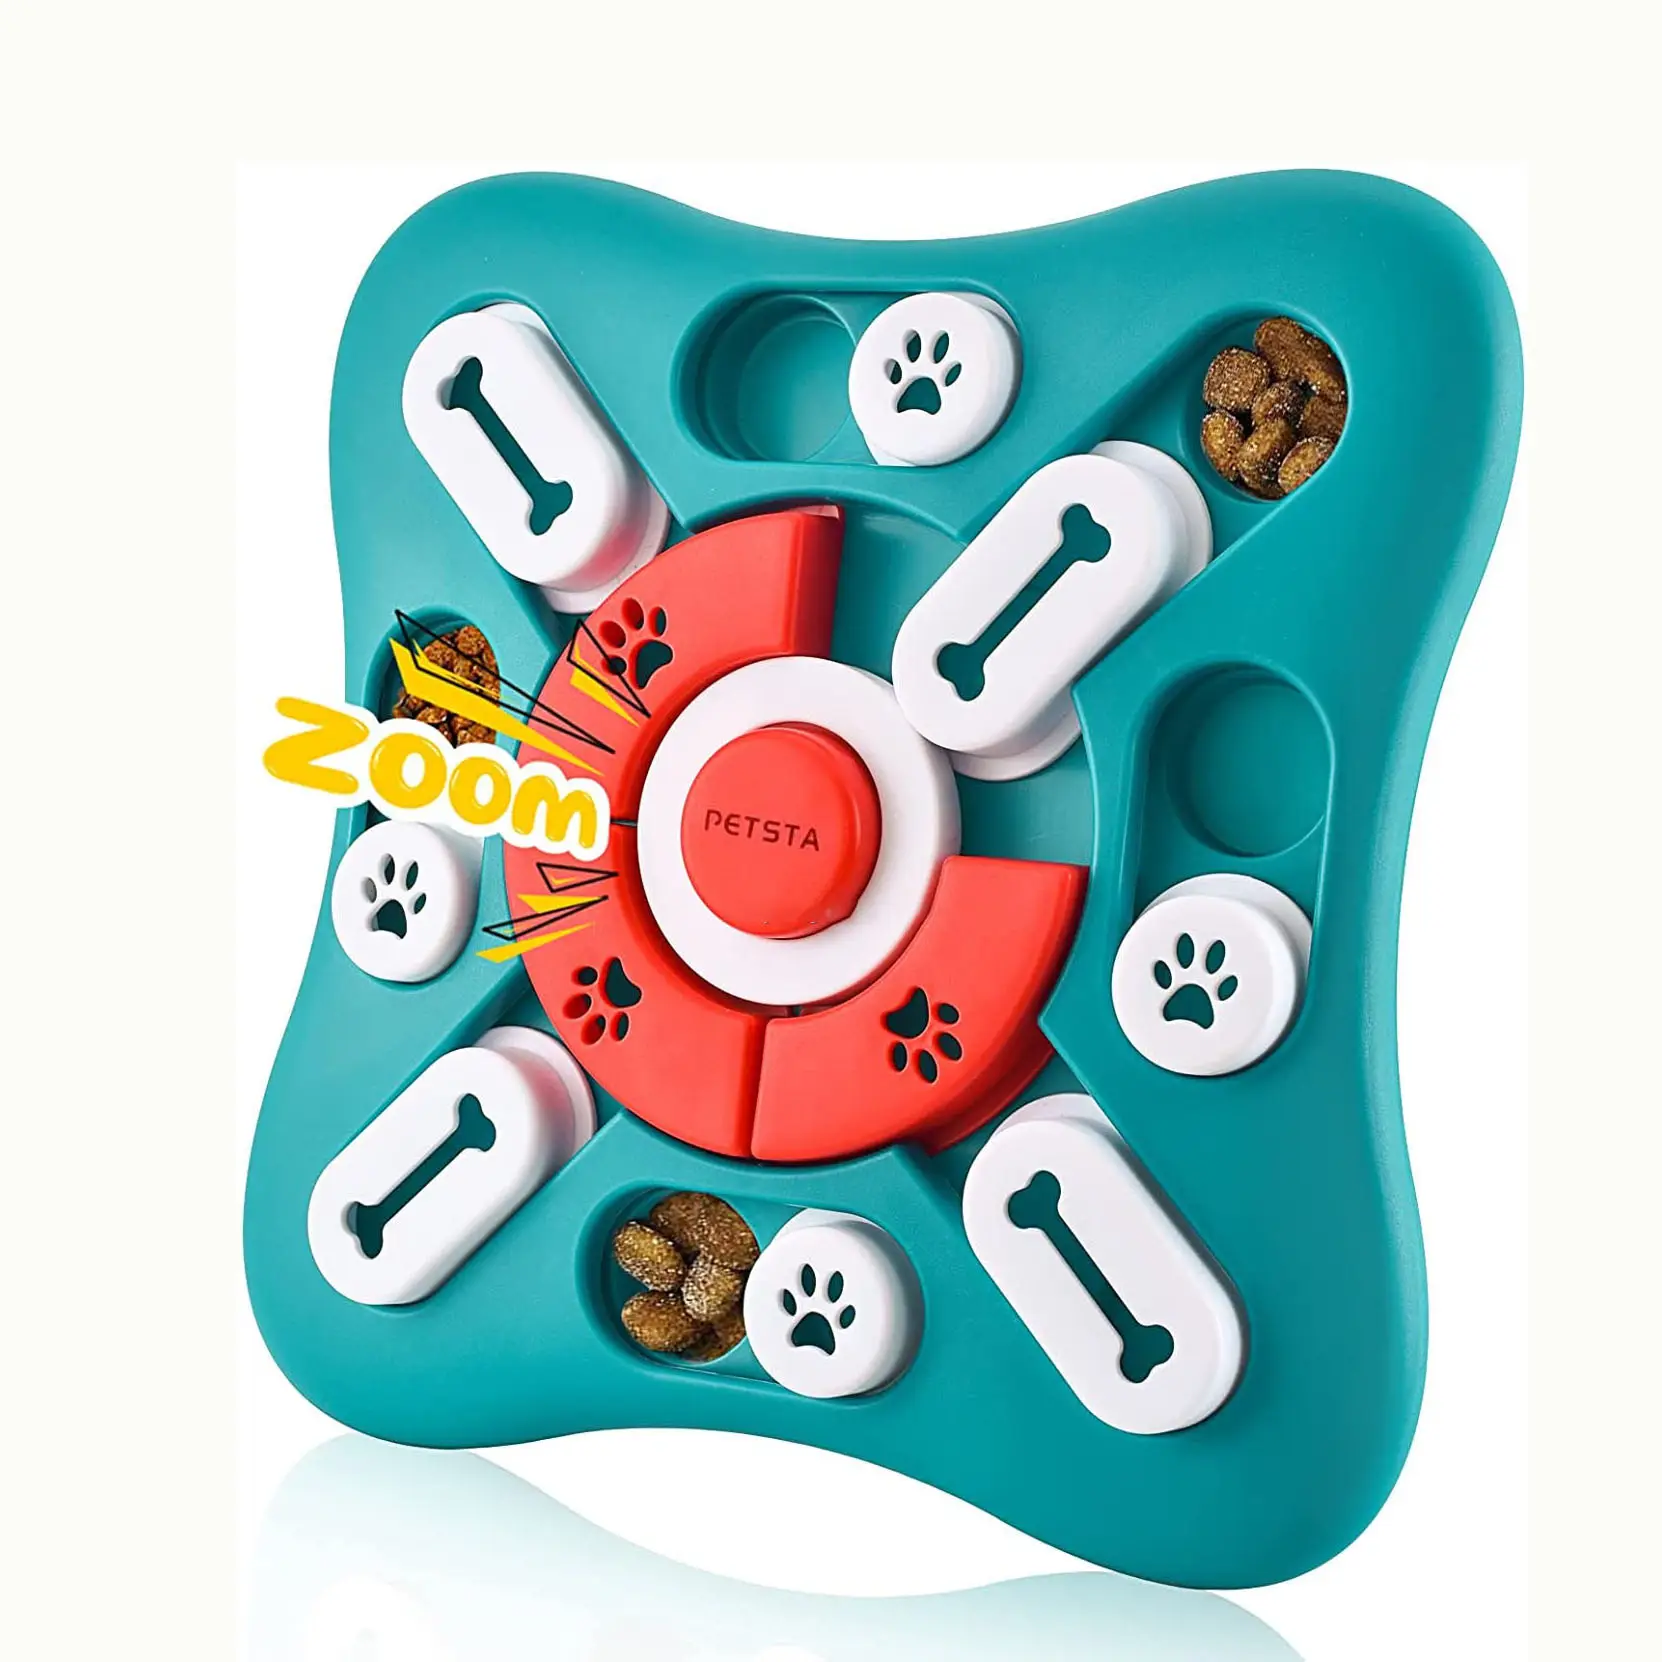 Puzle interactivo con Control remoto inteligente para mascotas, juguete de alimentación divertido para perros, estimulador del cerebro